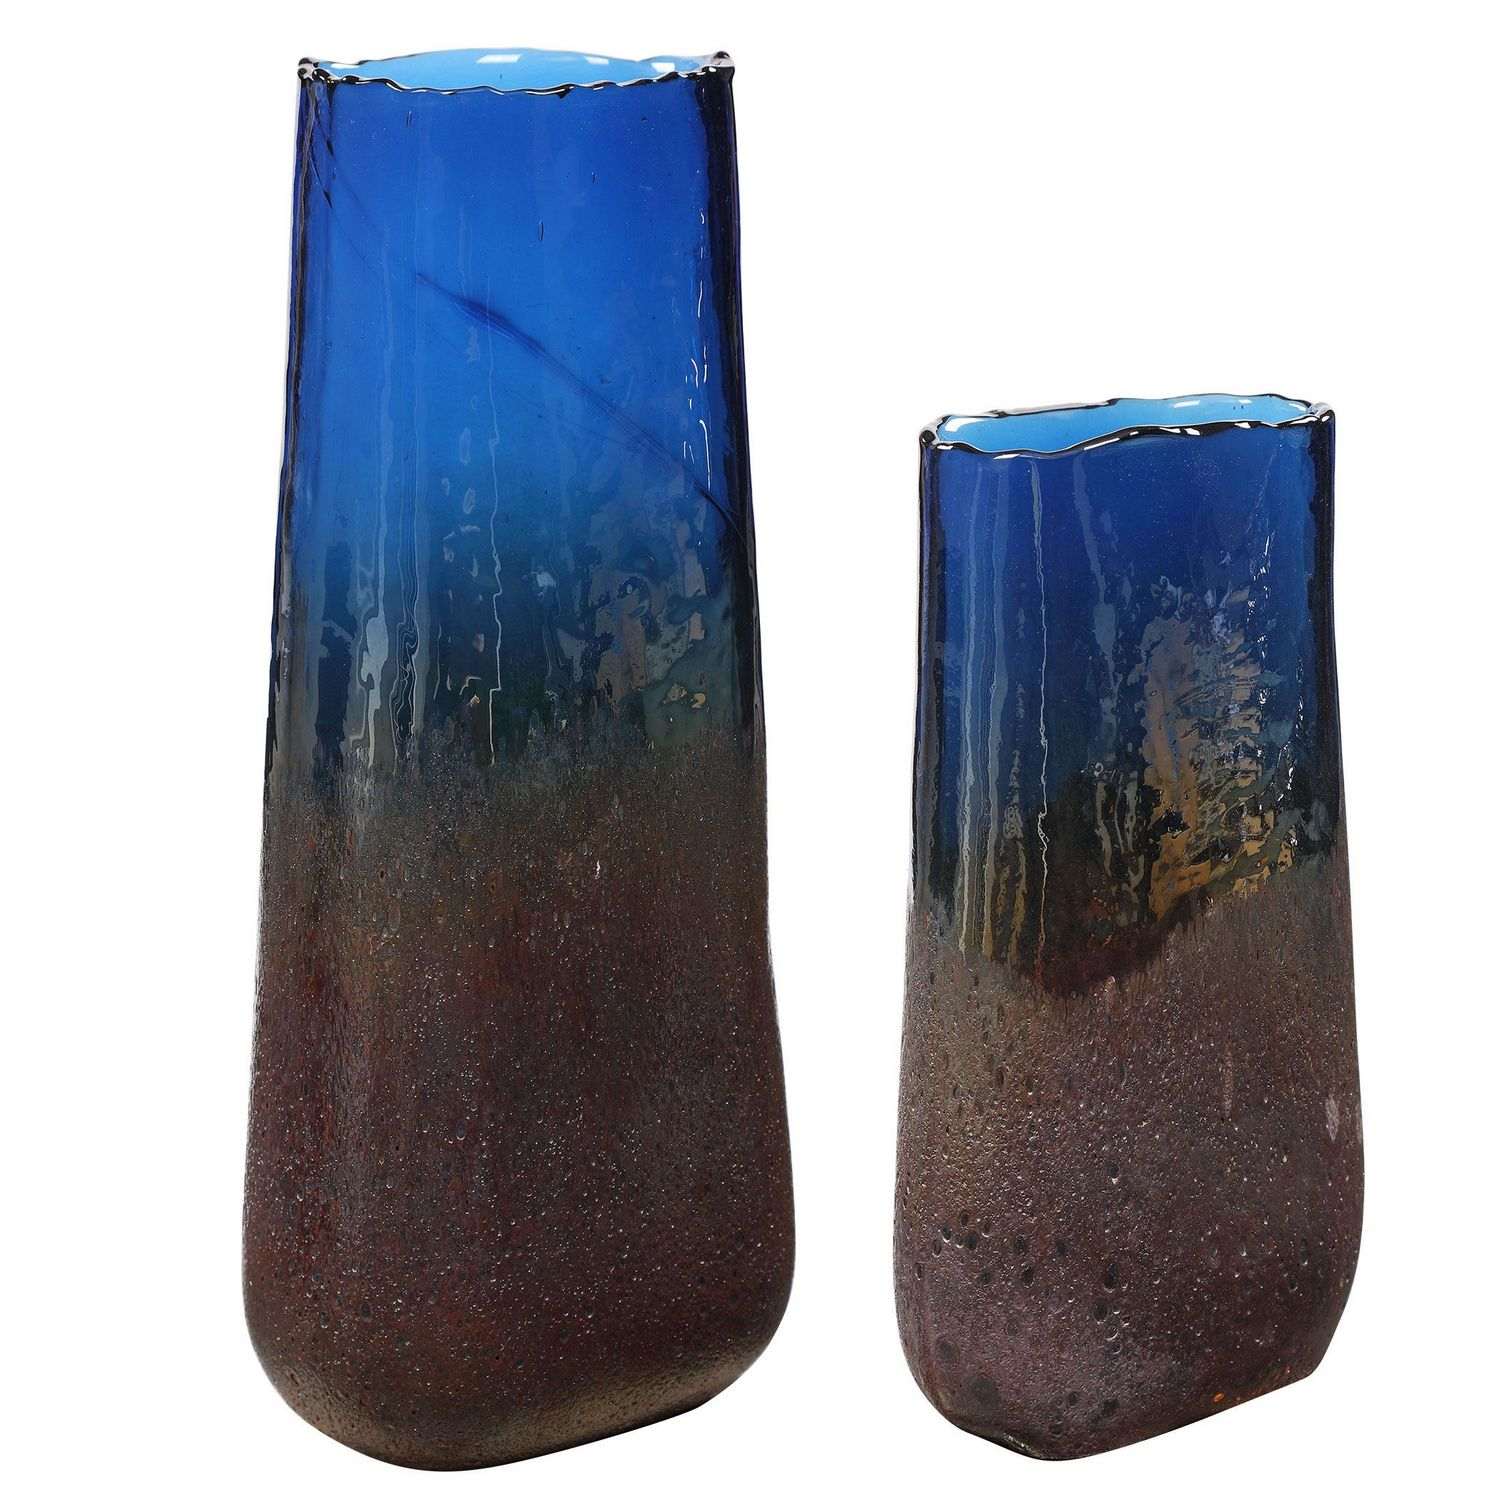 Uttermost Capri Cobalt Glass Vases - Set of 2 - Blue